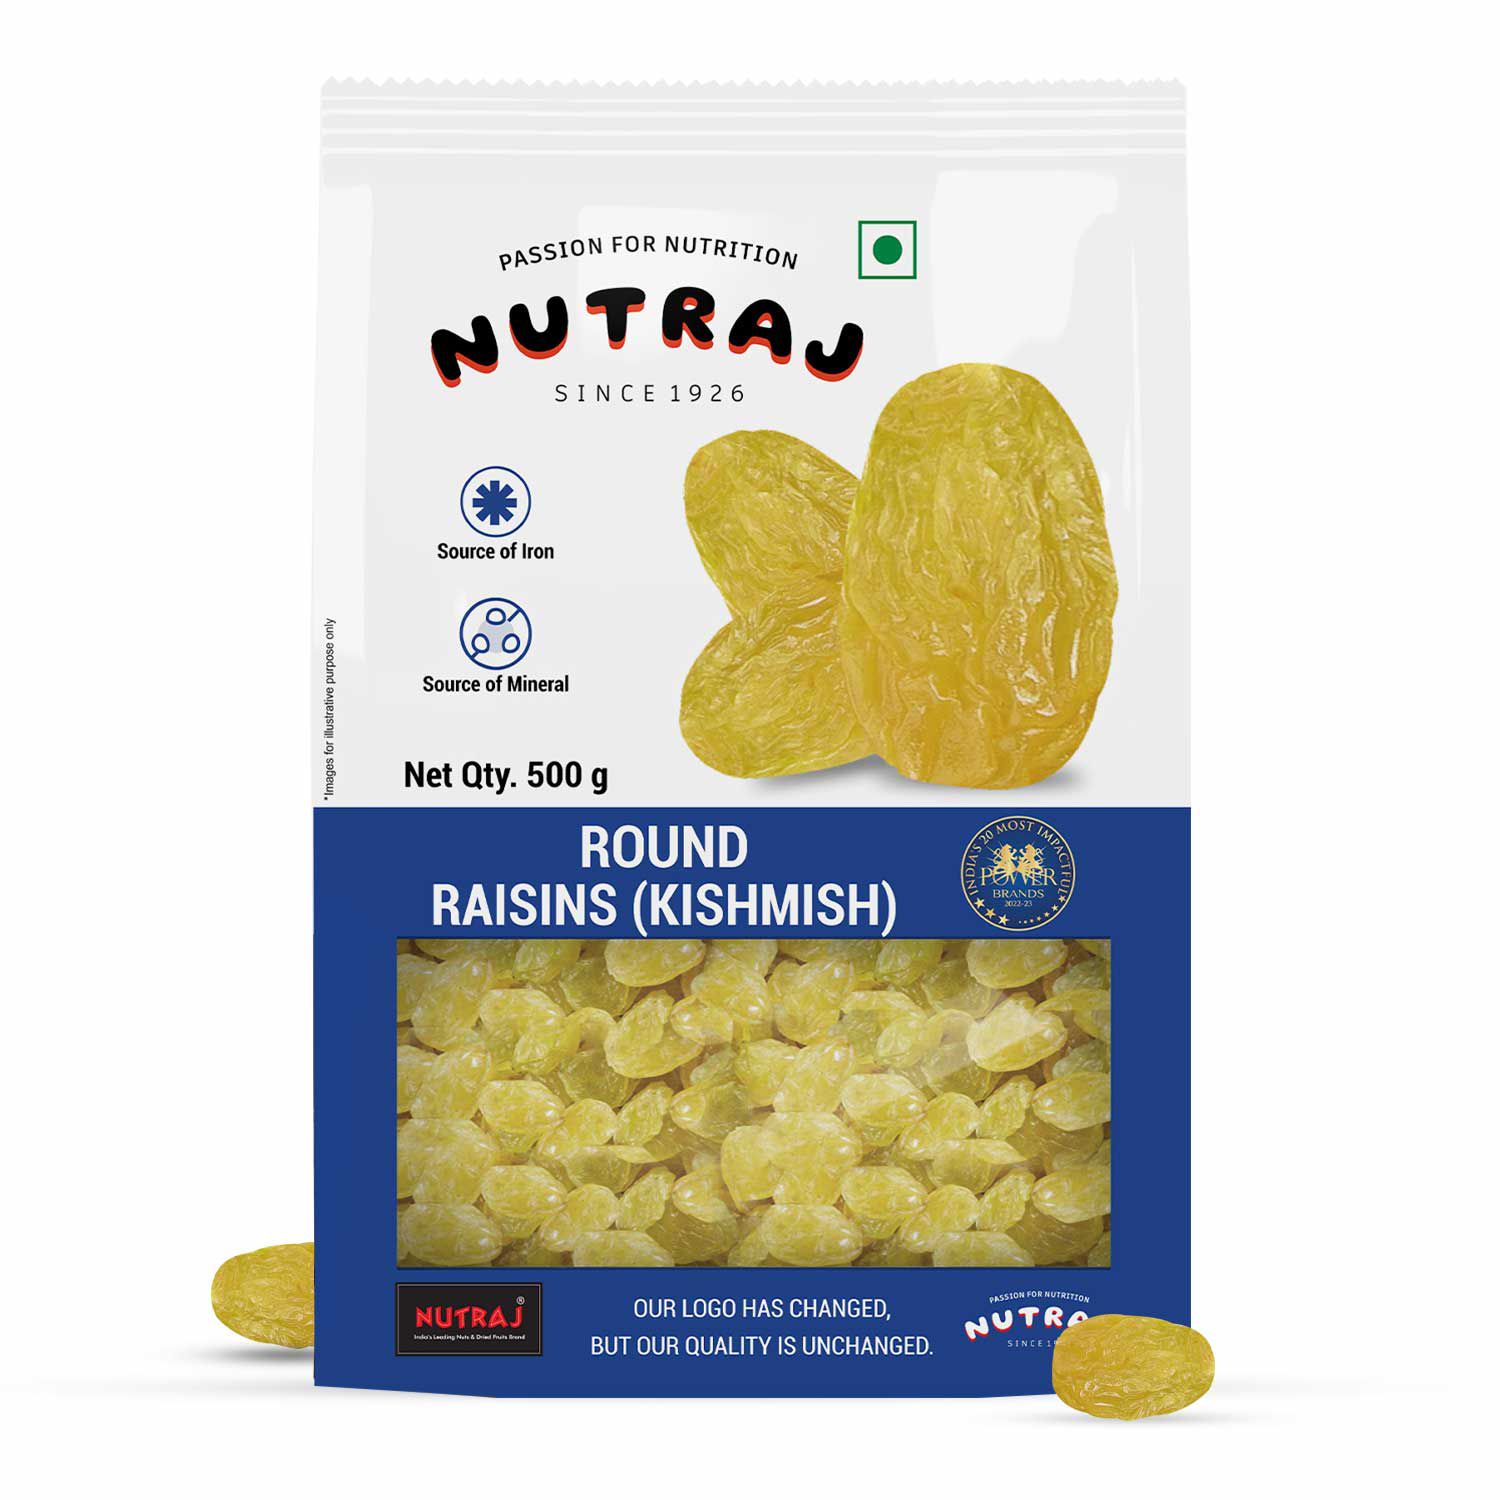     			Nutraj Round Raisins 500g, Kishmish 500g